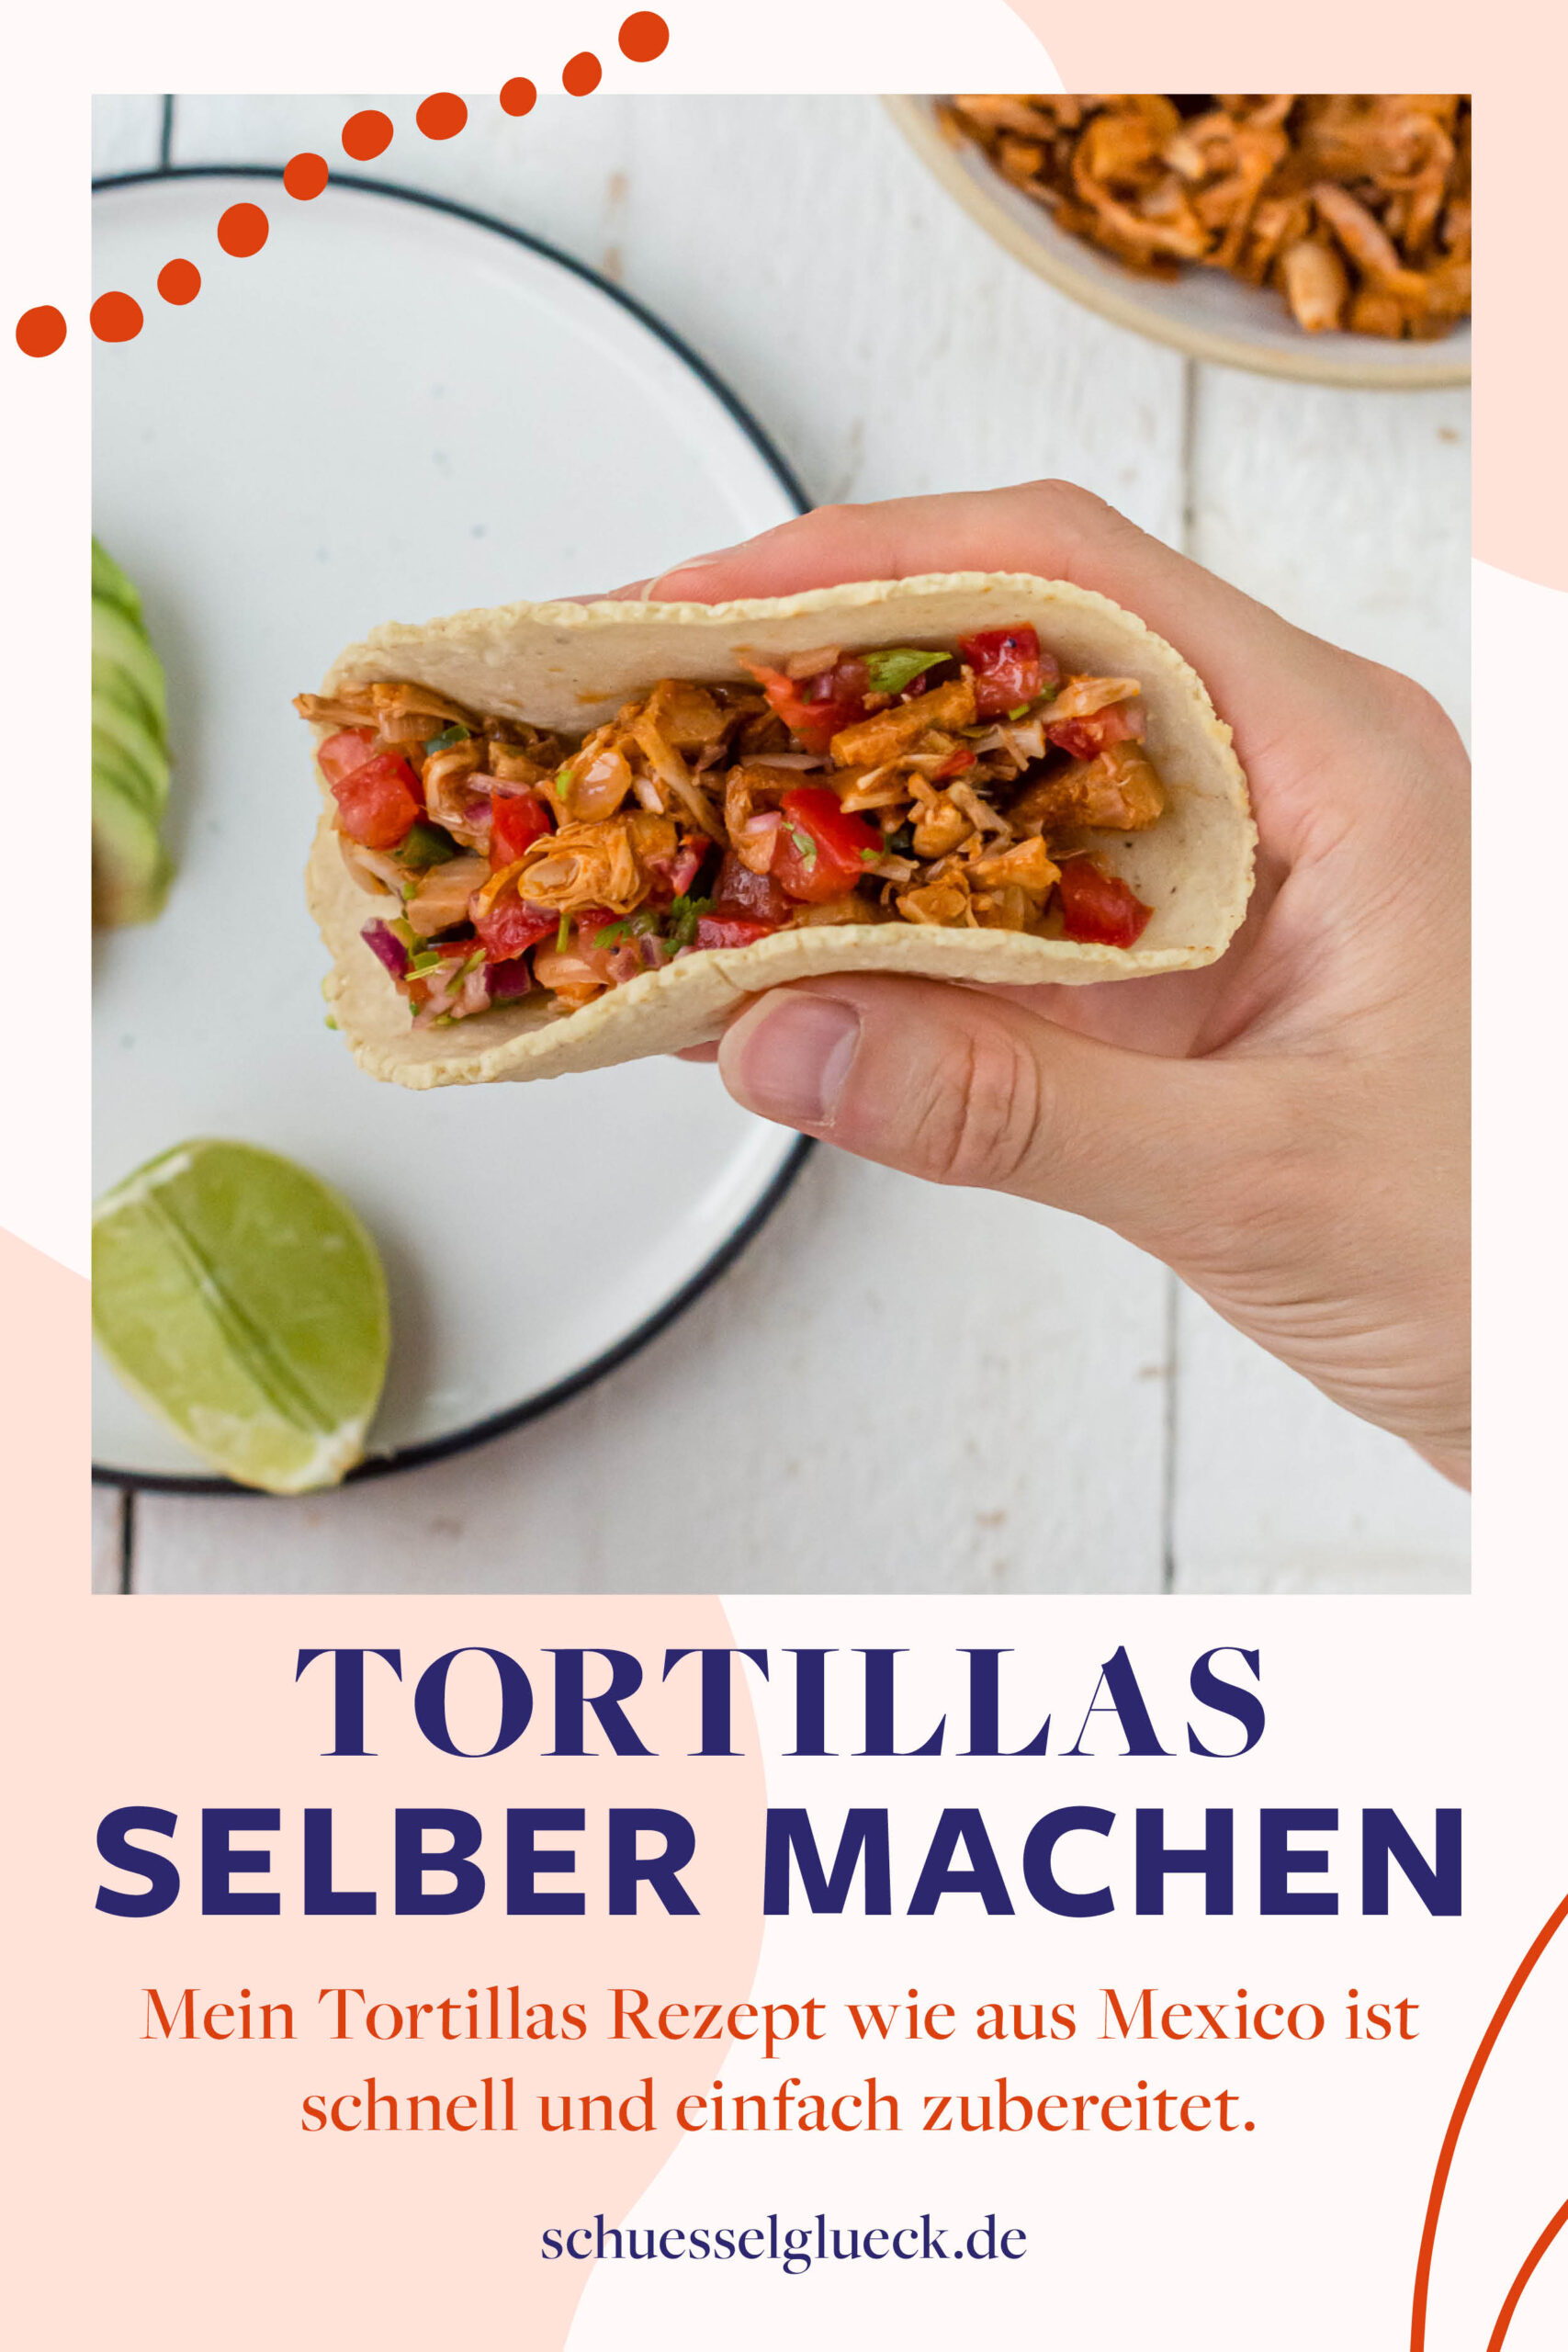 Tortillas aus Maismehl wie in Mexiko selber machen – mit Schritt für Schritt Anleitung!